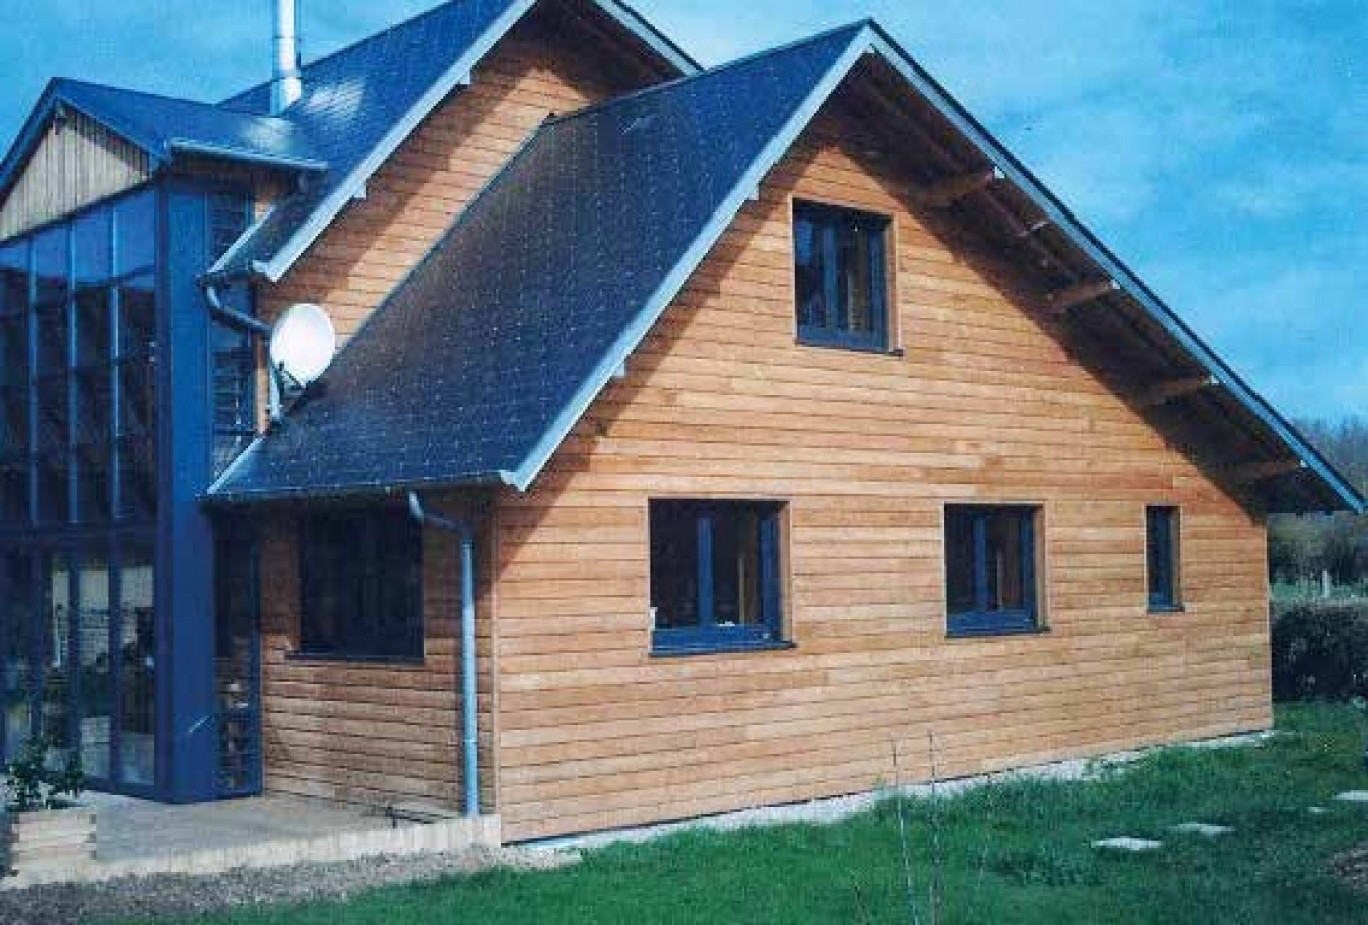 Les maisons avec ossature bois sont construites particulièrement rapidement, elles mettent six à sept mois pour sortir de terre selon Raymond Hotte. 